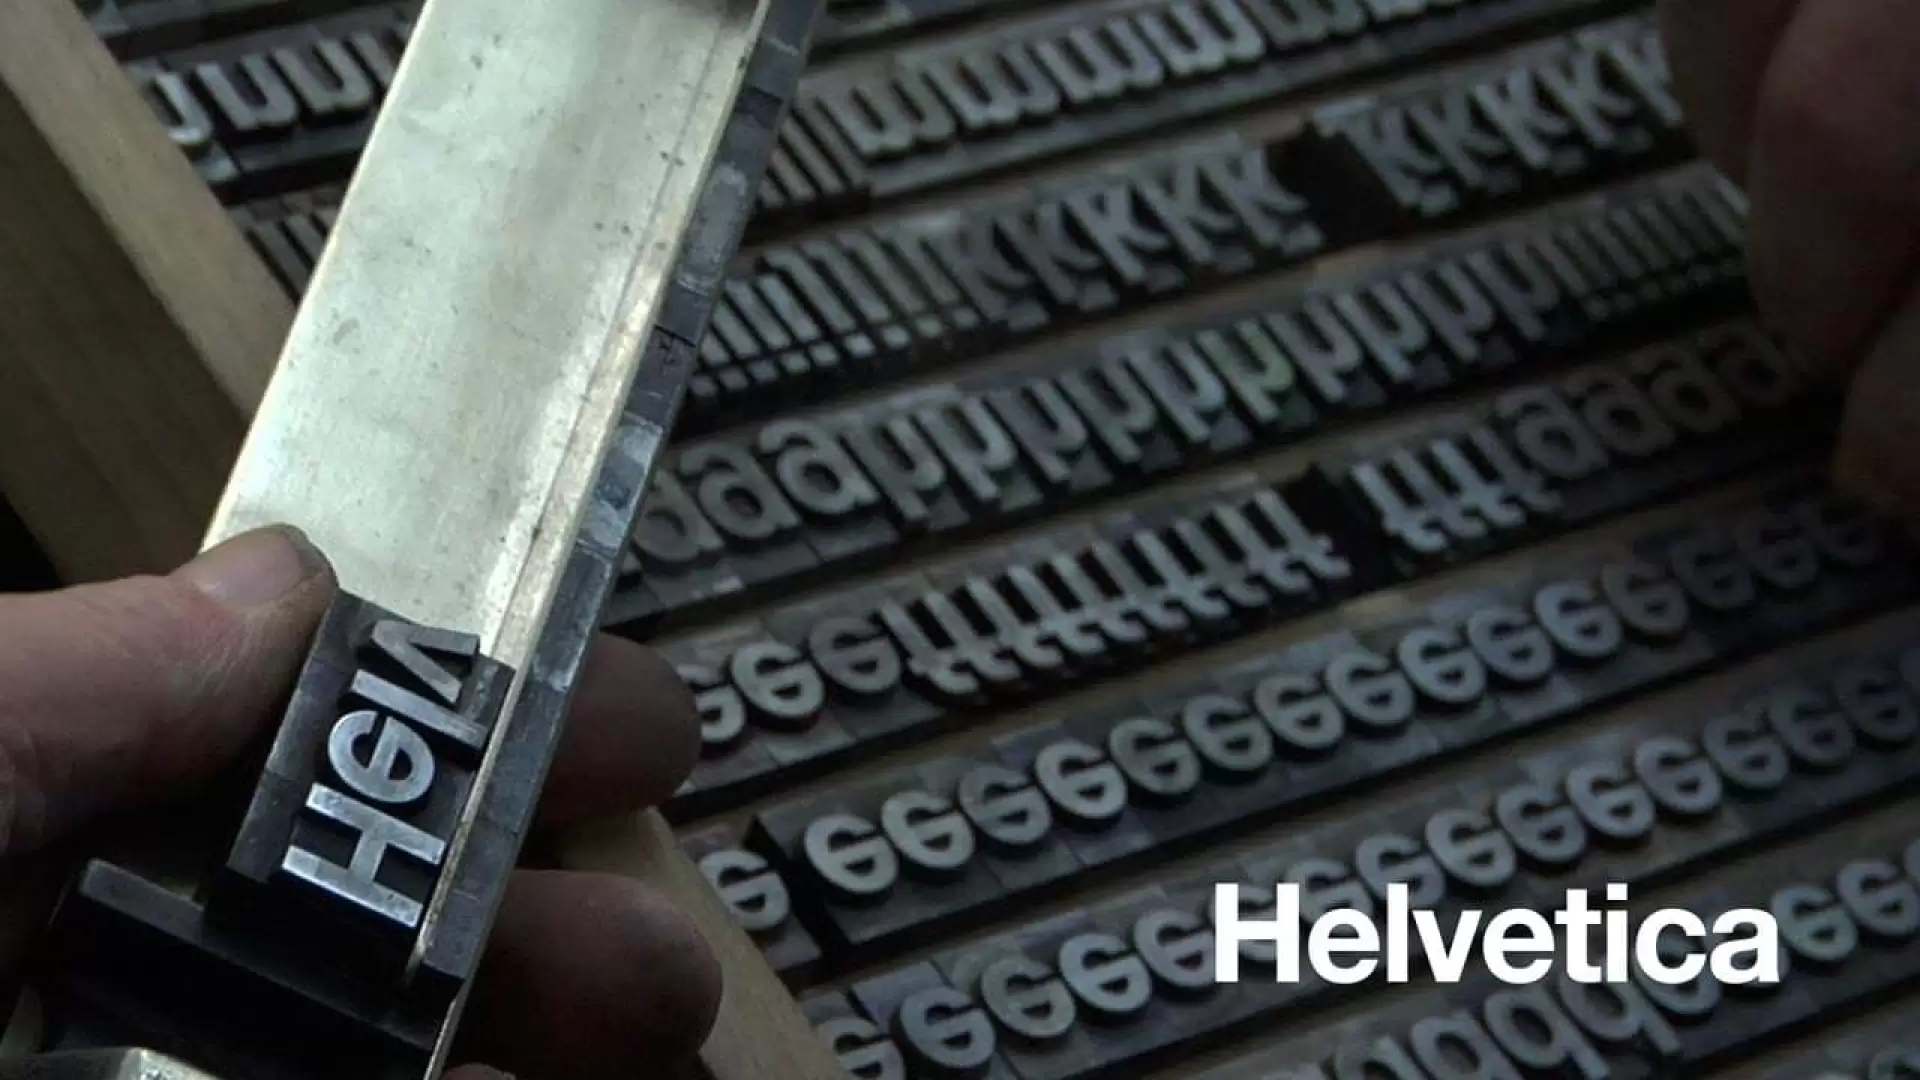 دانلود مستند Helvetica 2007